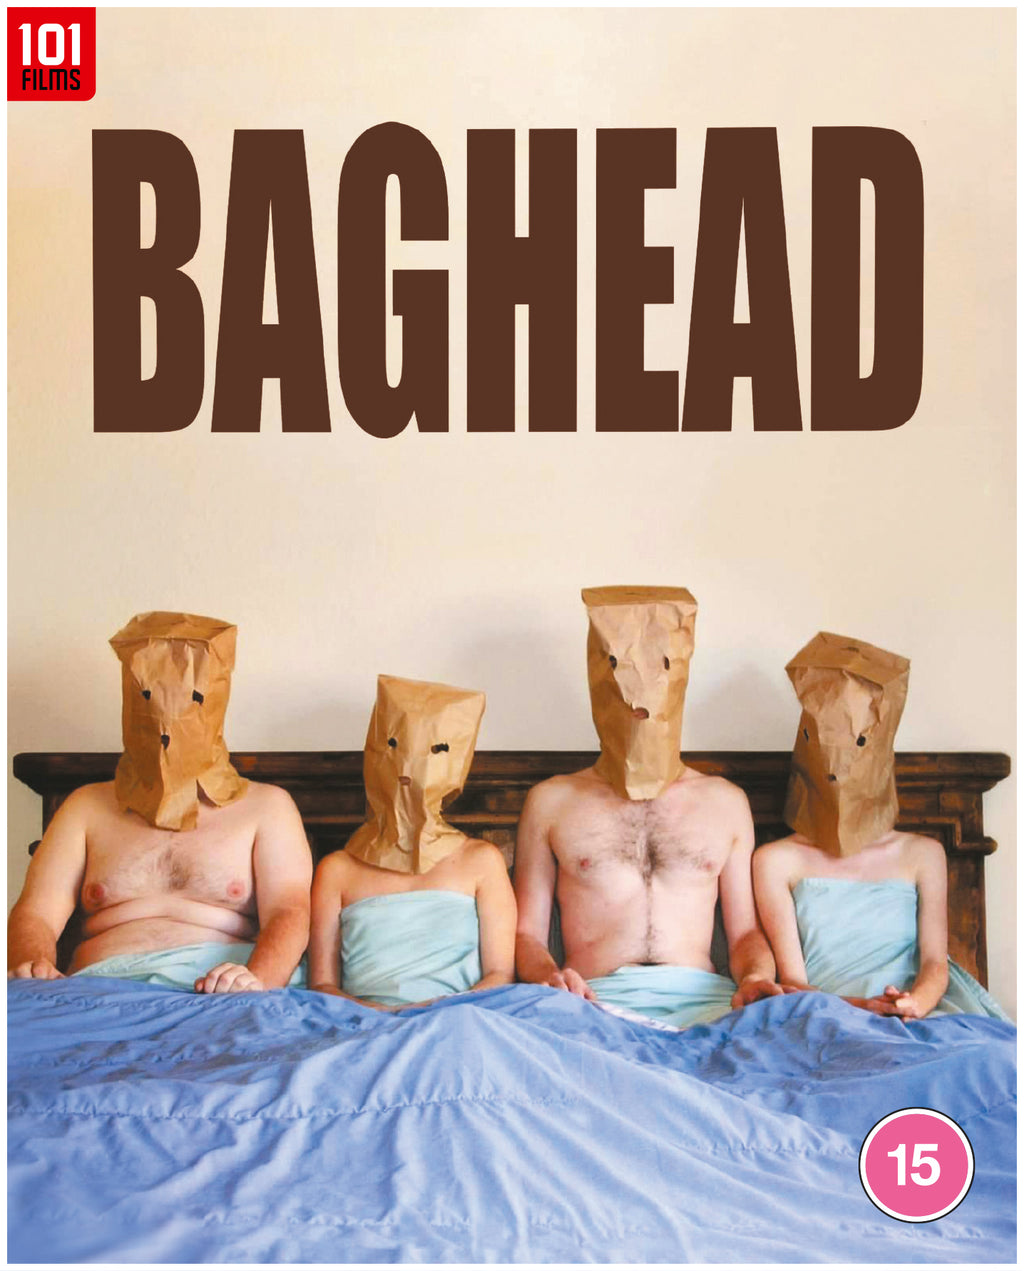 Baghead (2008) (Blu-ray)